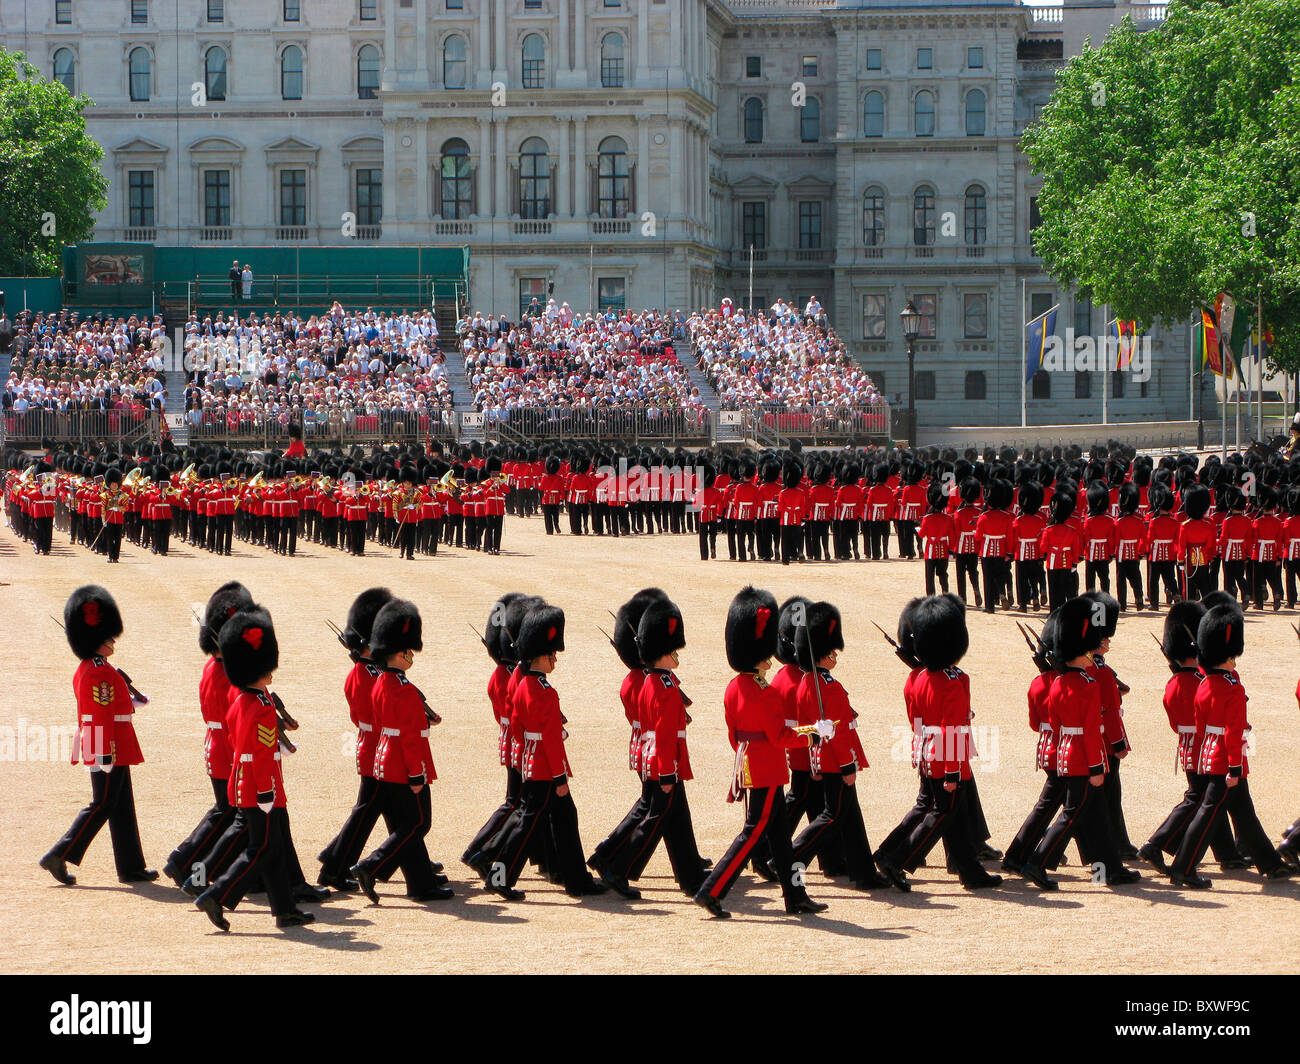 Troopng die Farbe, traditionell, London, Uk, Englisch Jahresveranstaltung in Pferd schützt Parade. Stockfoto